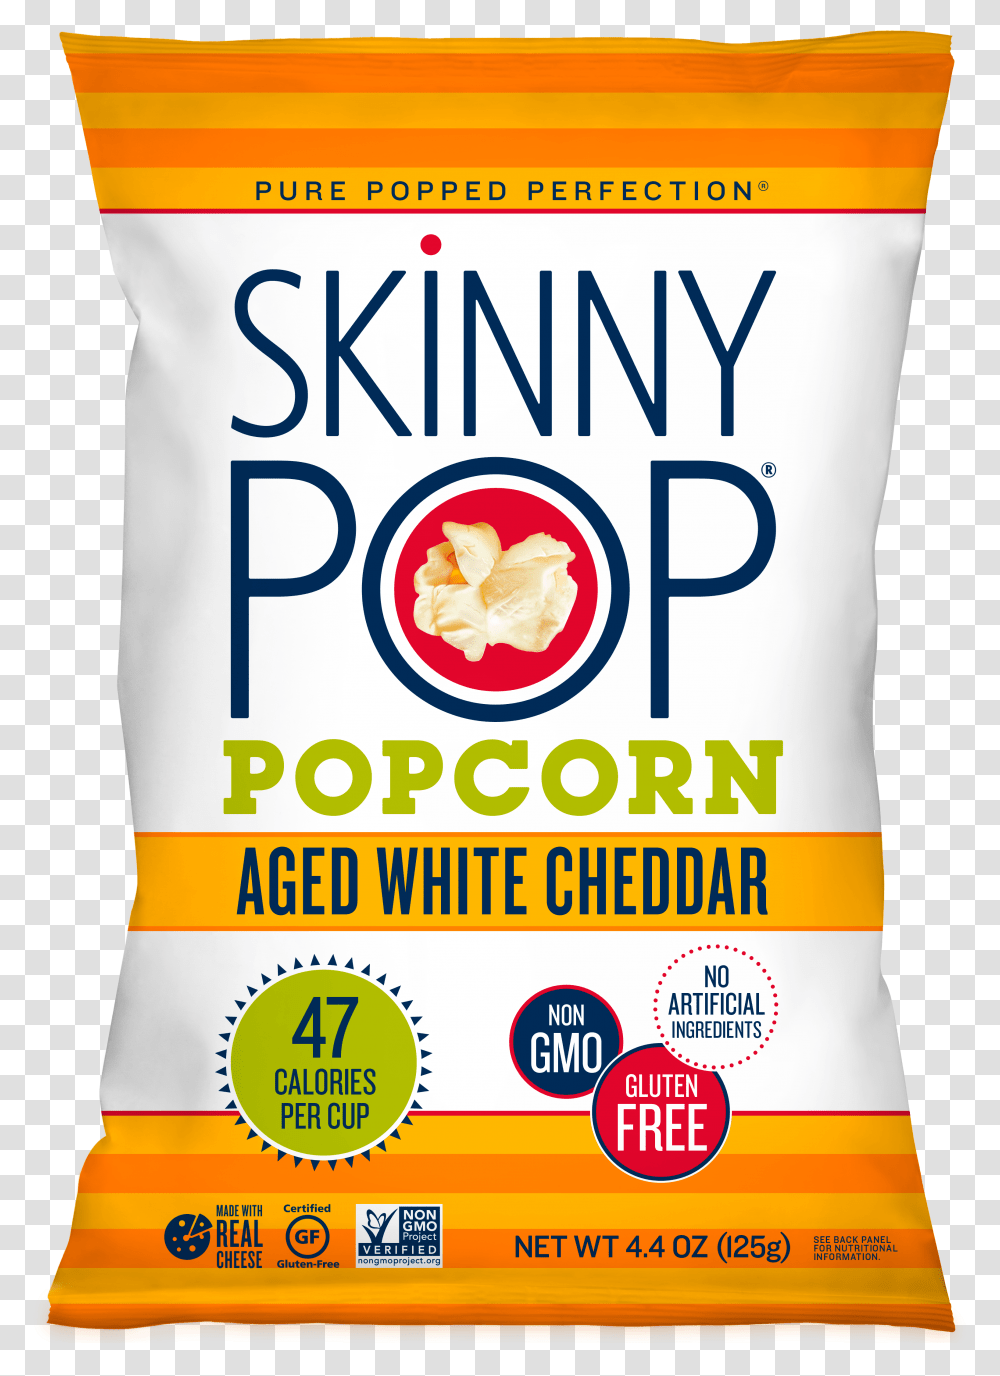 Aged White Cheddar Popcorn Junk Food, Flour, Powder, Bag, Poster Transparent Png